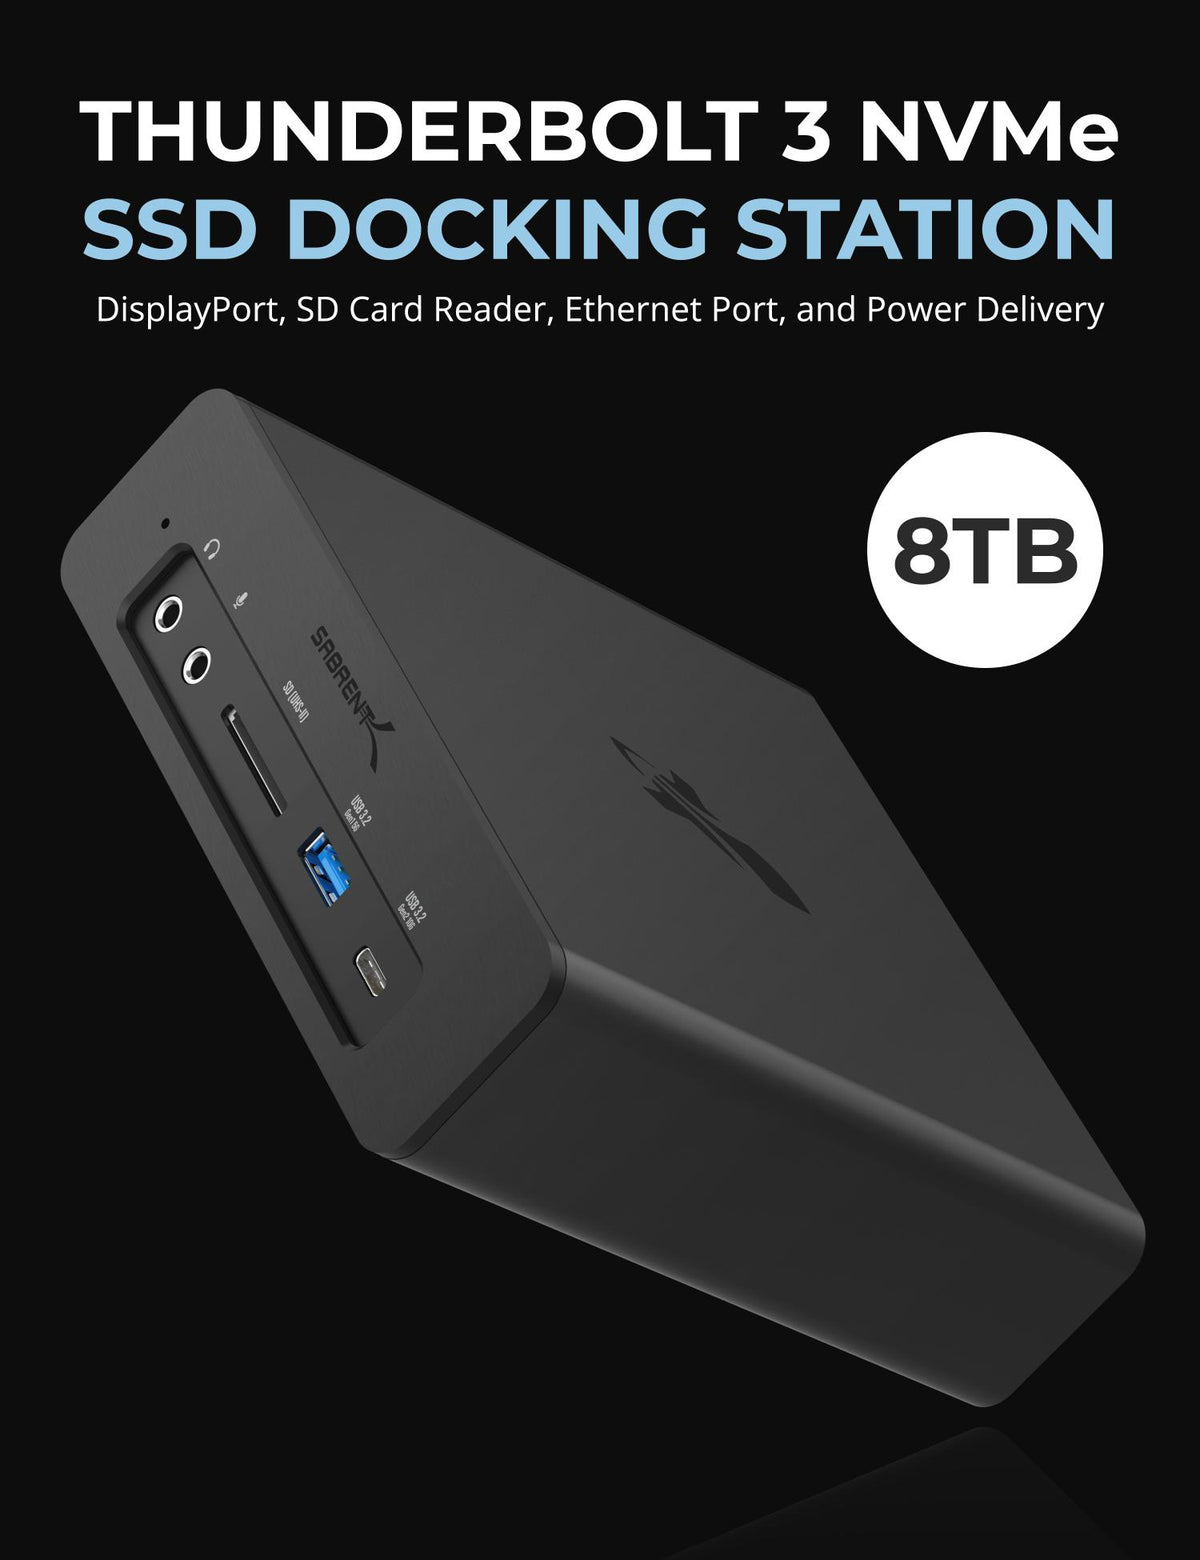 Thunderbolt 3 NVMe SSD Docking Station